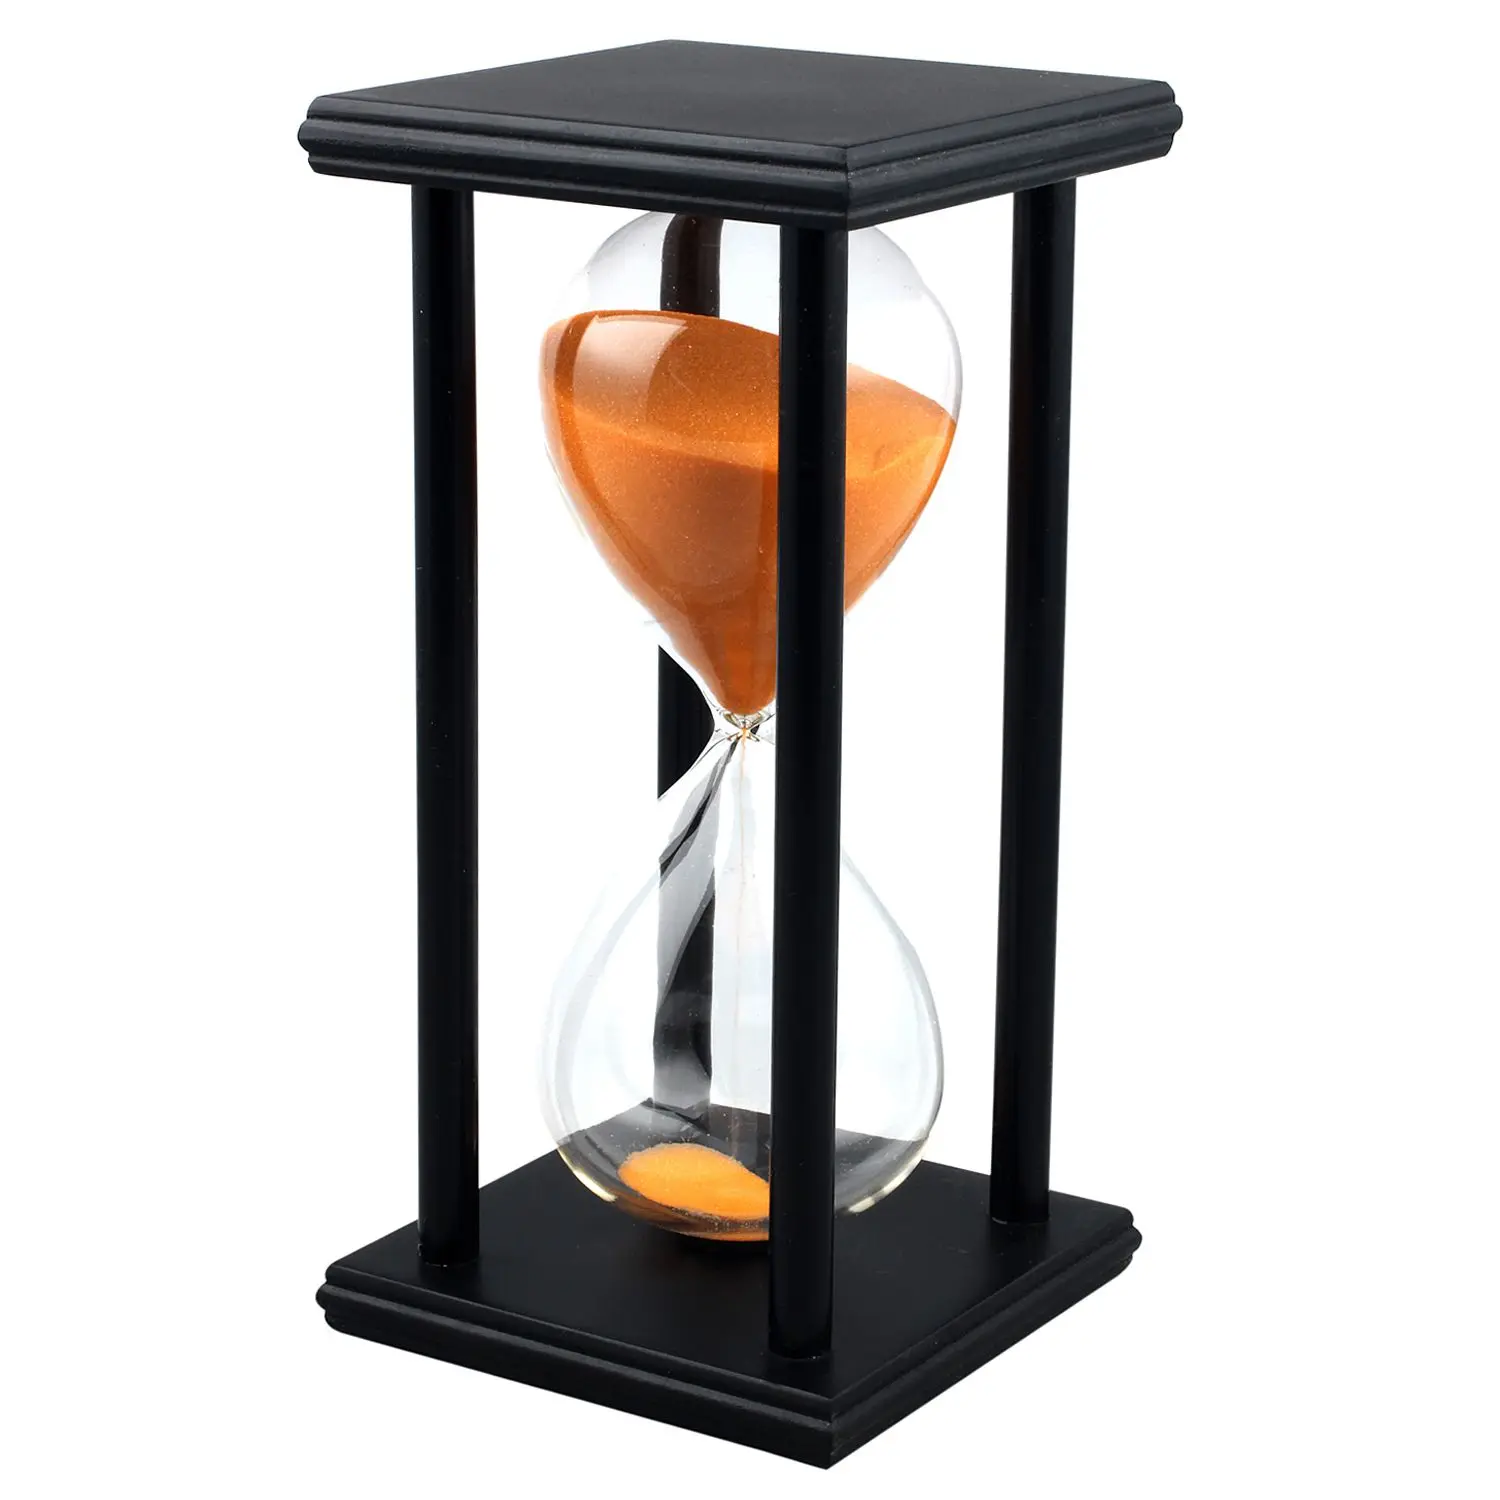 SZS популярные цвета! 60 мин Деревянный Песок Песочные часы Таймер Декор уникальный подарок Тип: 60 мин черная рамка оранжевый песок